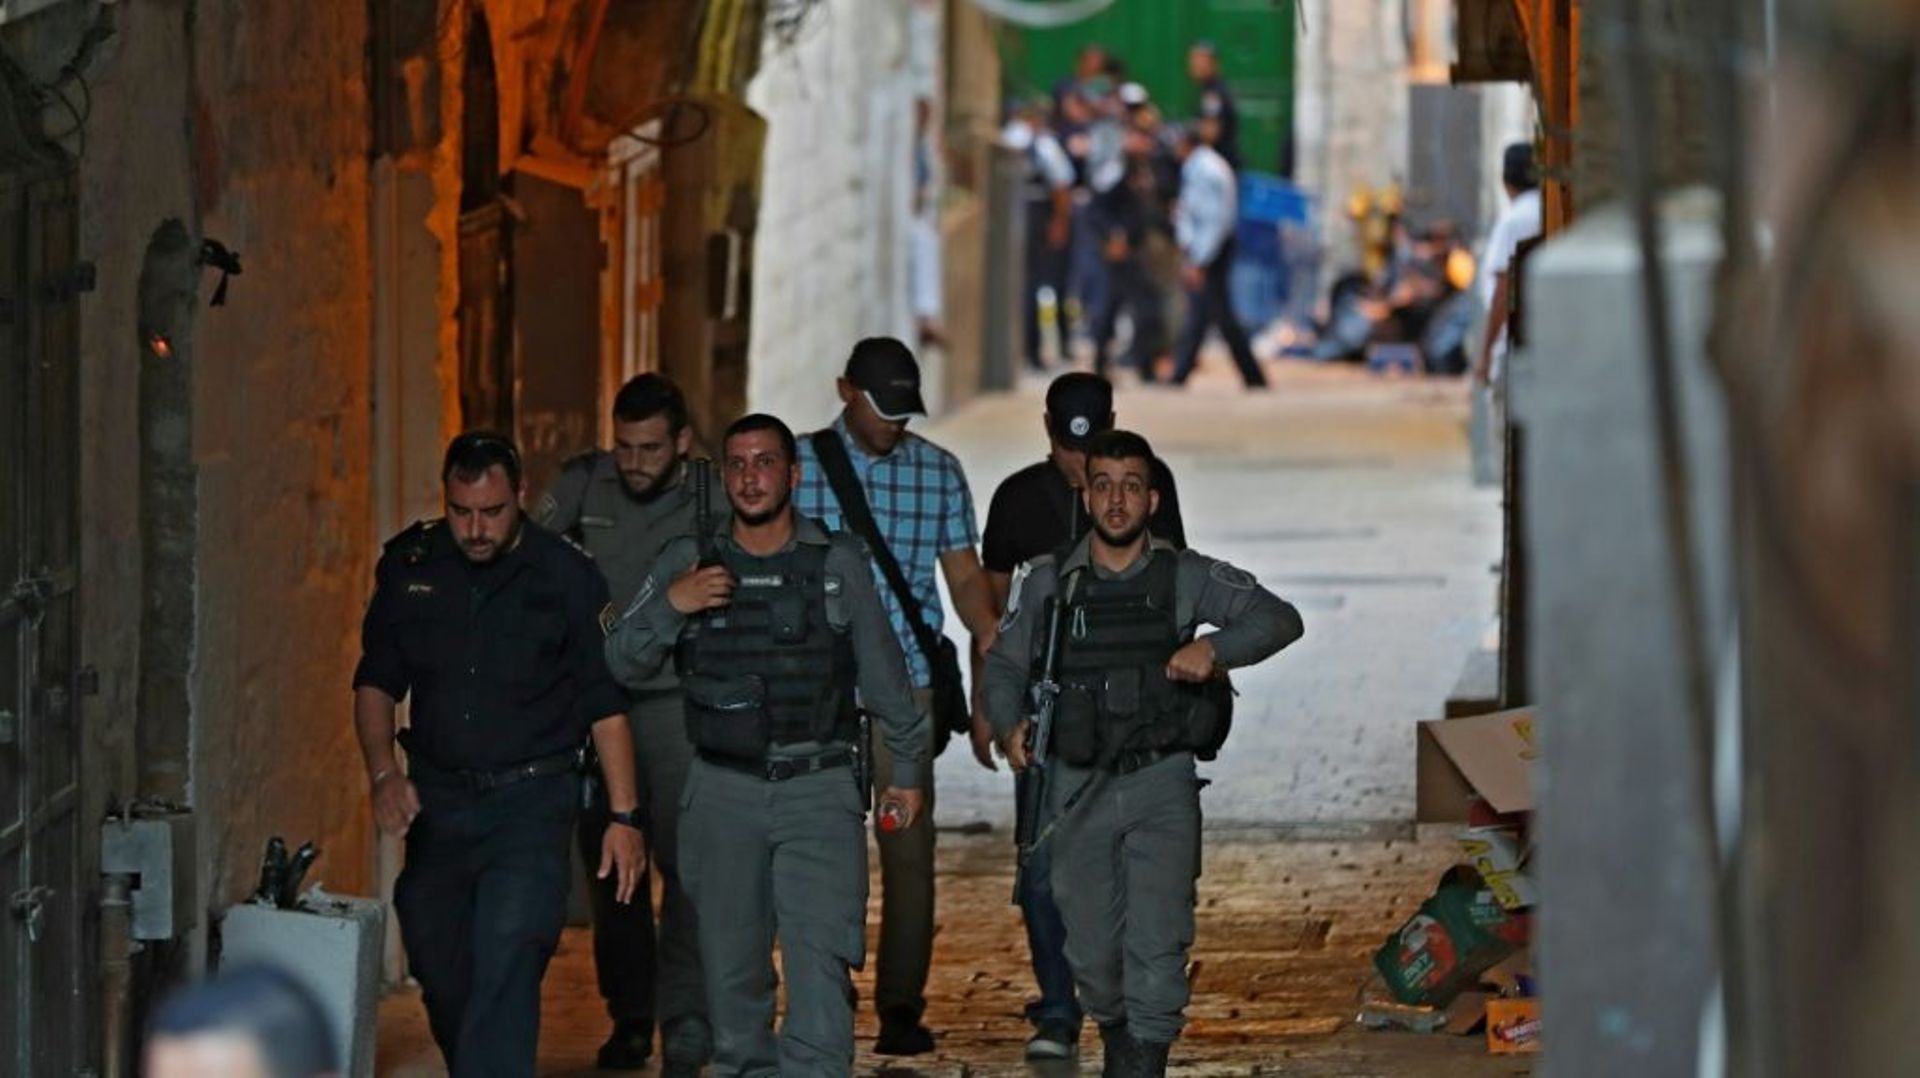 Des membres des forces de sécurité israéliennes sur les lieux de l'attaque palestinienne au couteau contre un policier israélien qui a été blessé le 15 août 2019 à Jérusalem. L'un des assaillants a été tué, selon des responsables palestiniens